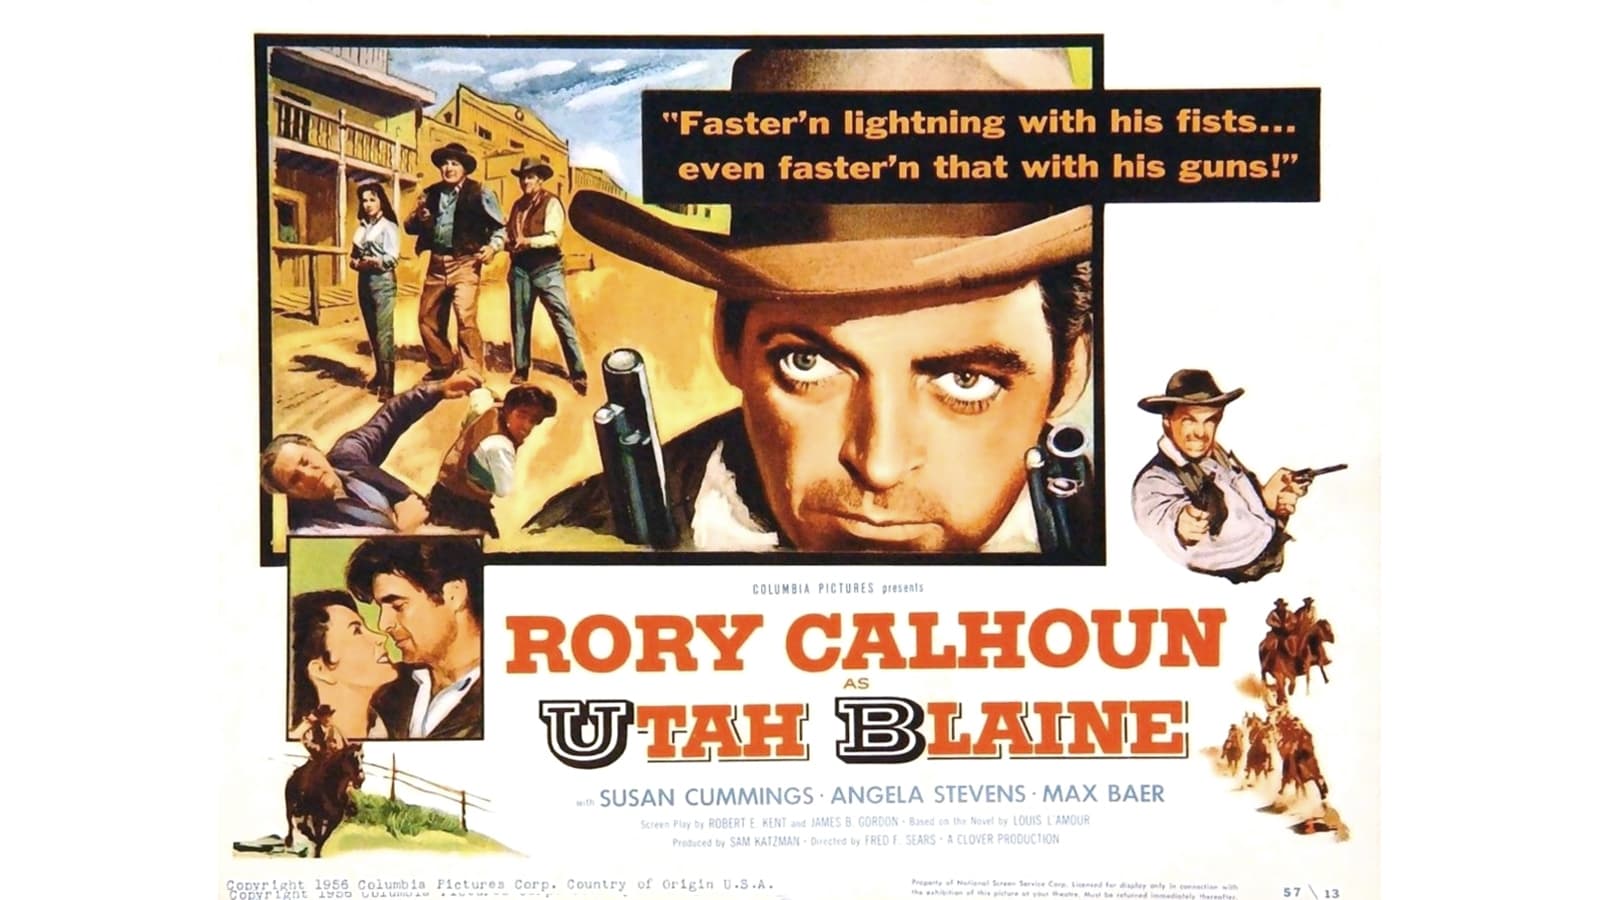 Utah Blaine (1957)